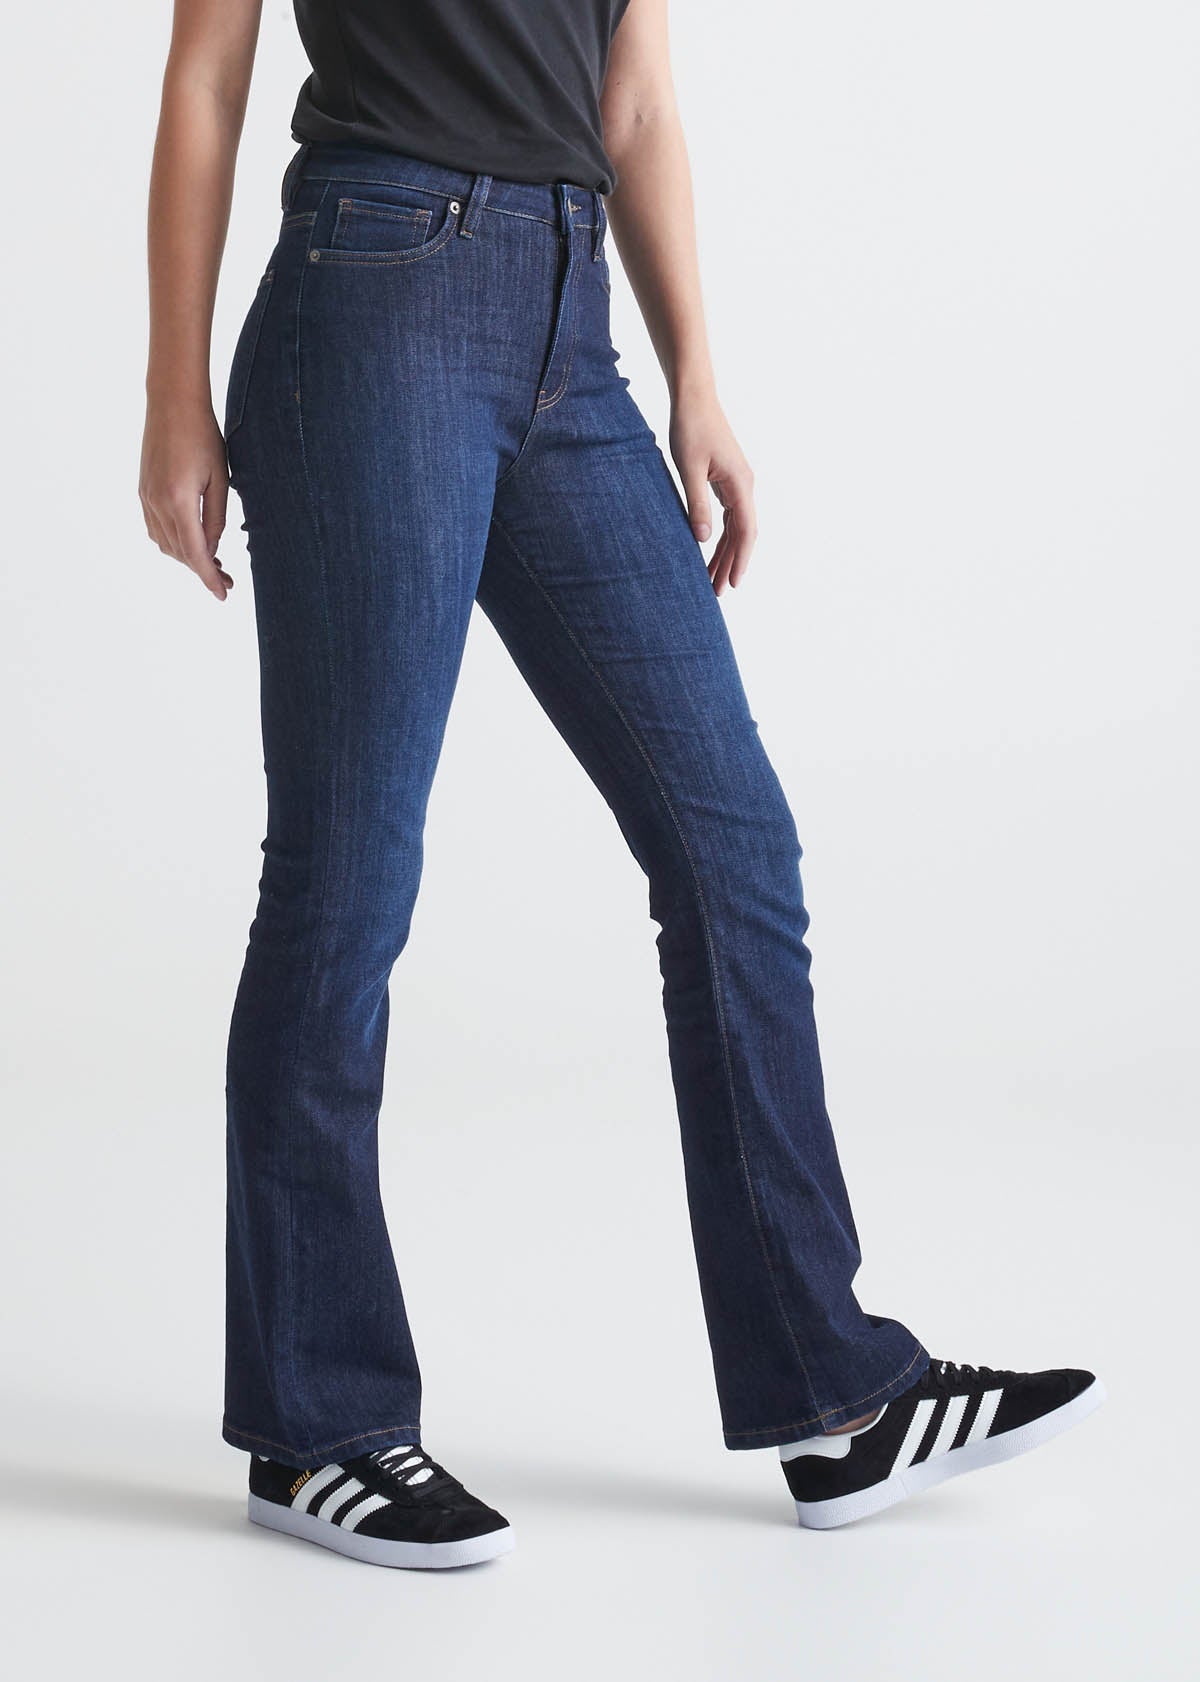 Women\'s Stretch Denim High Rise Bootcut Jean